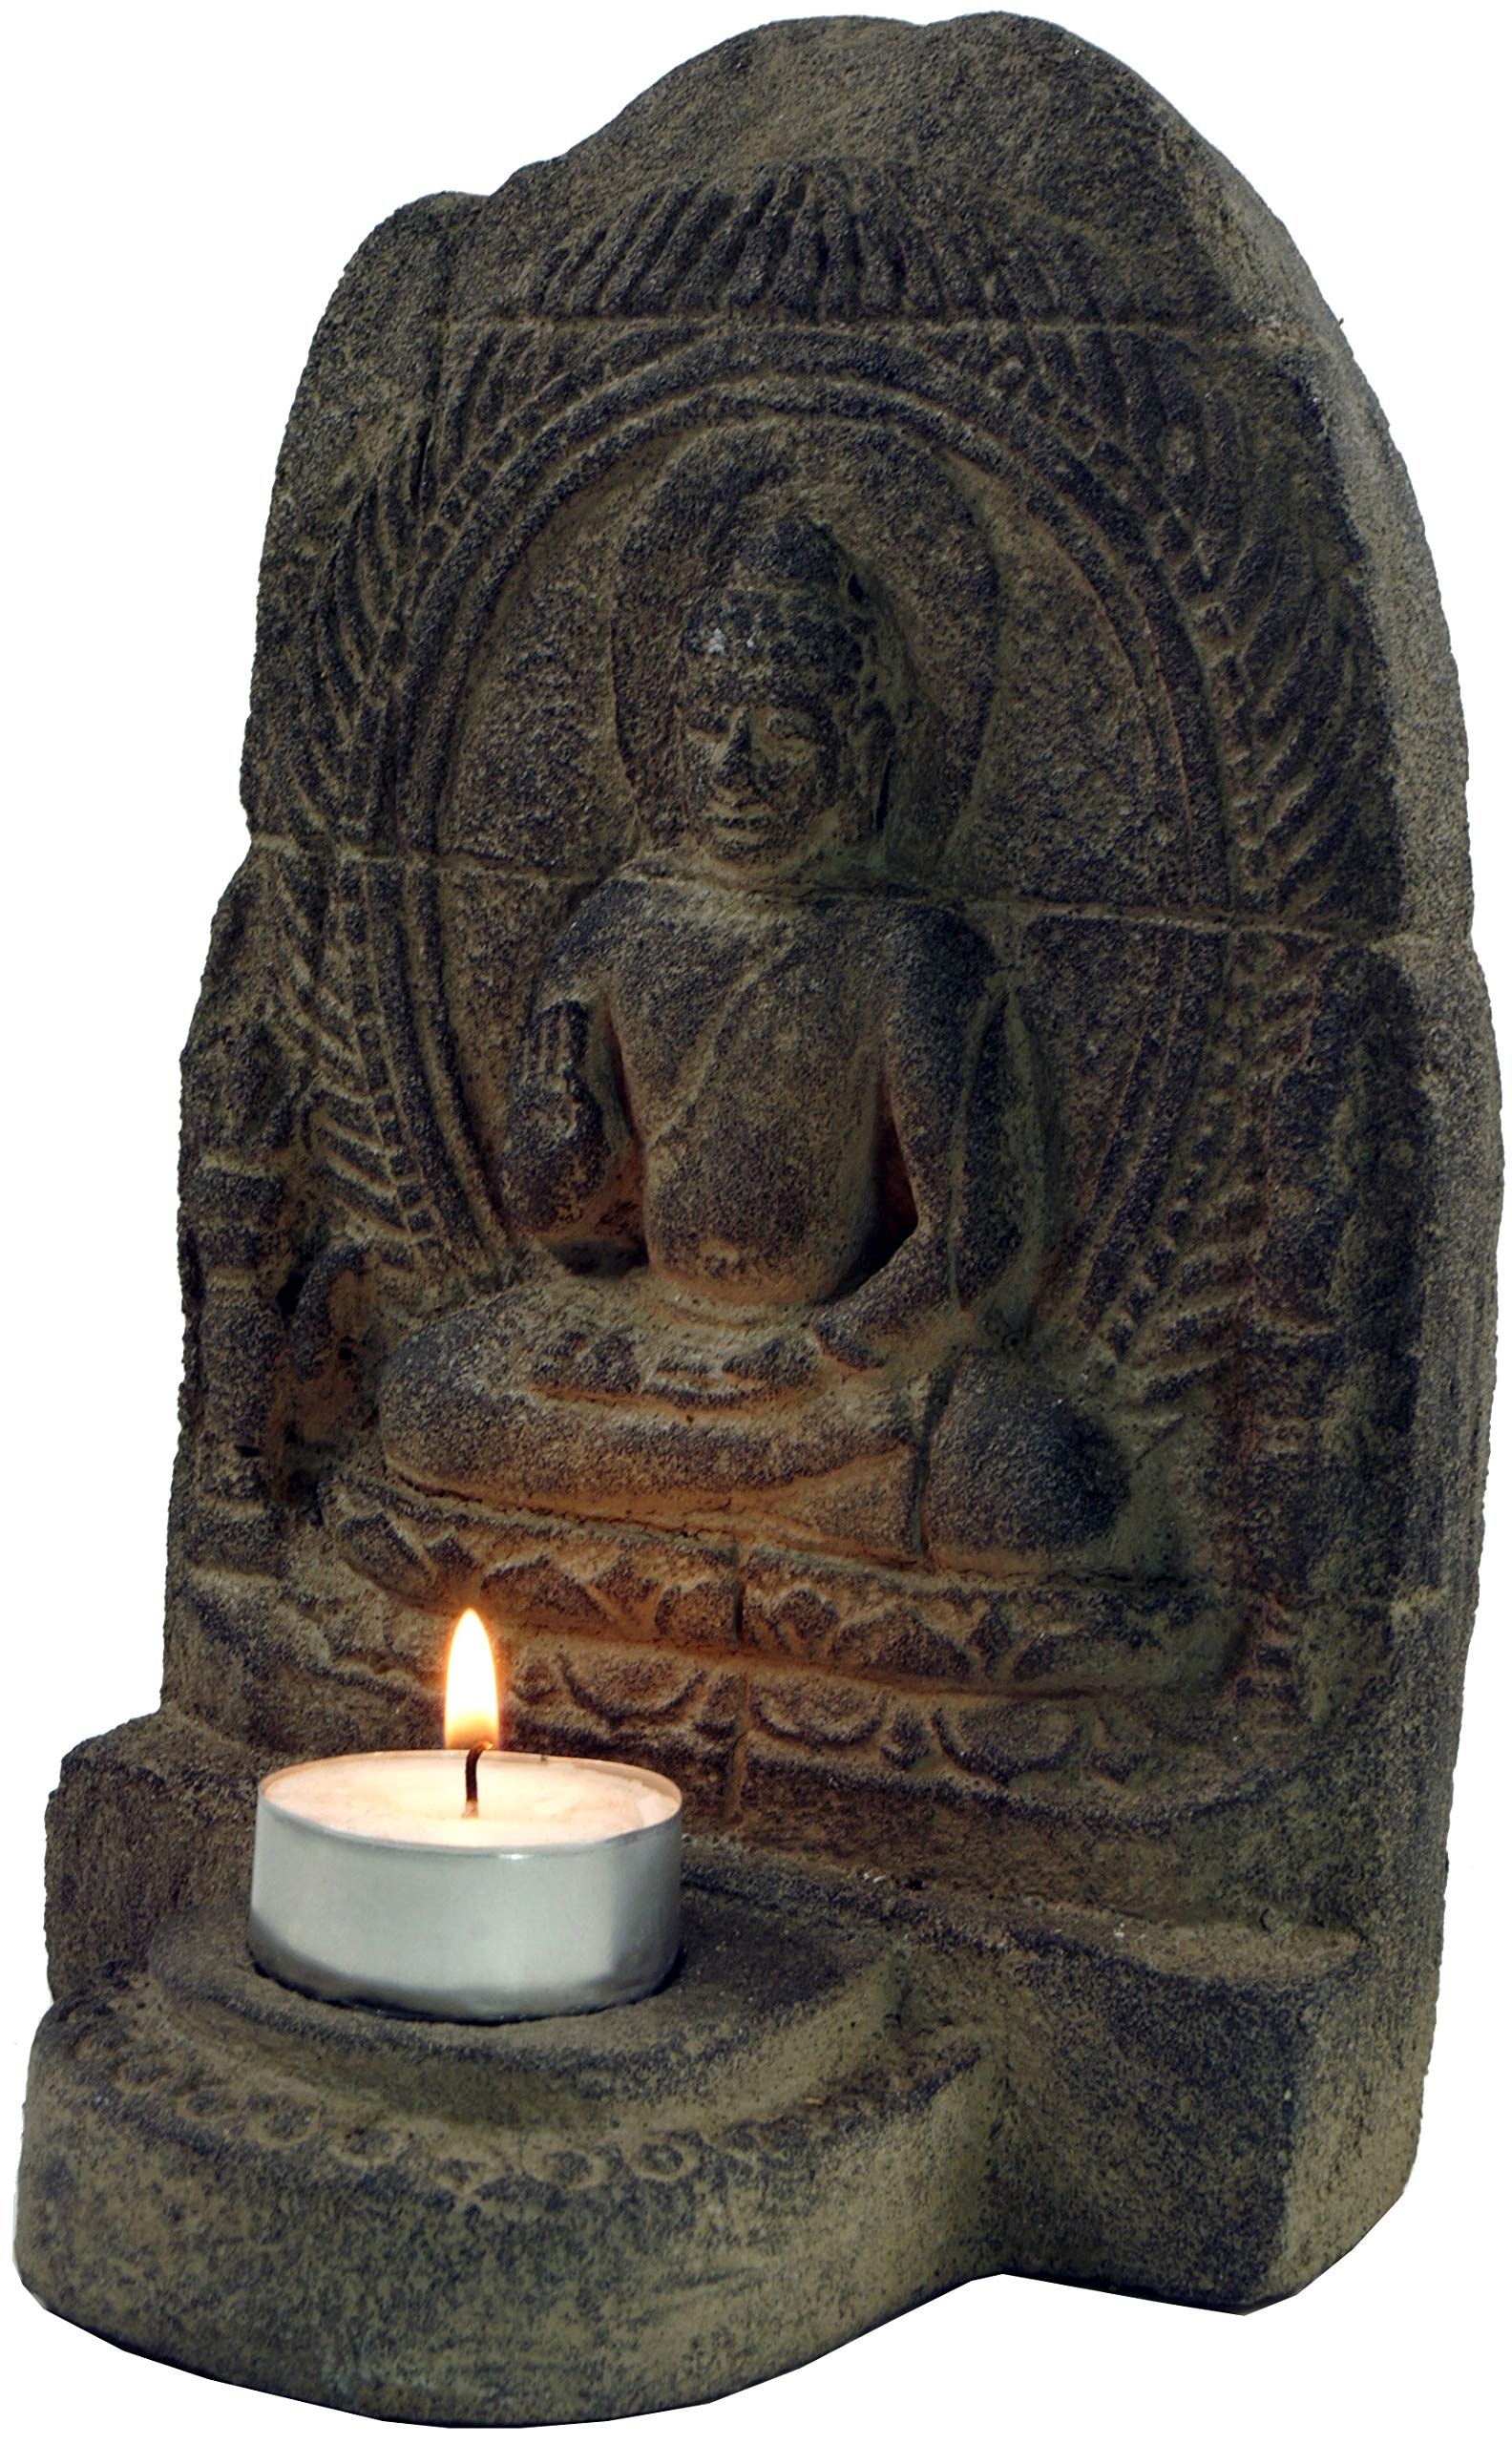 GURU SHOP Minitempel, Buddhafigur, Teelichthalter aus Stein, Braun, 20x14x9 cm, Buddhas